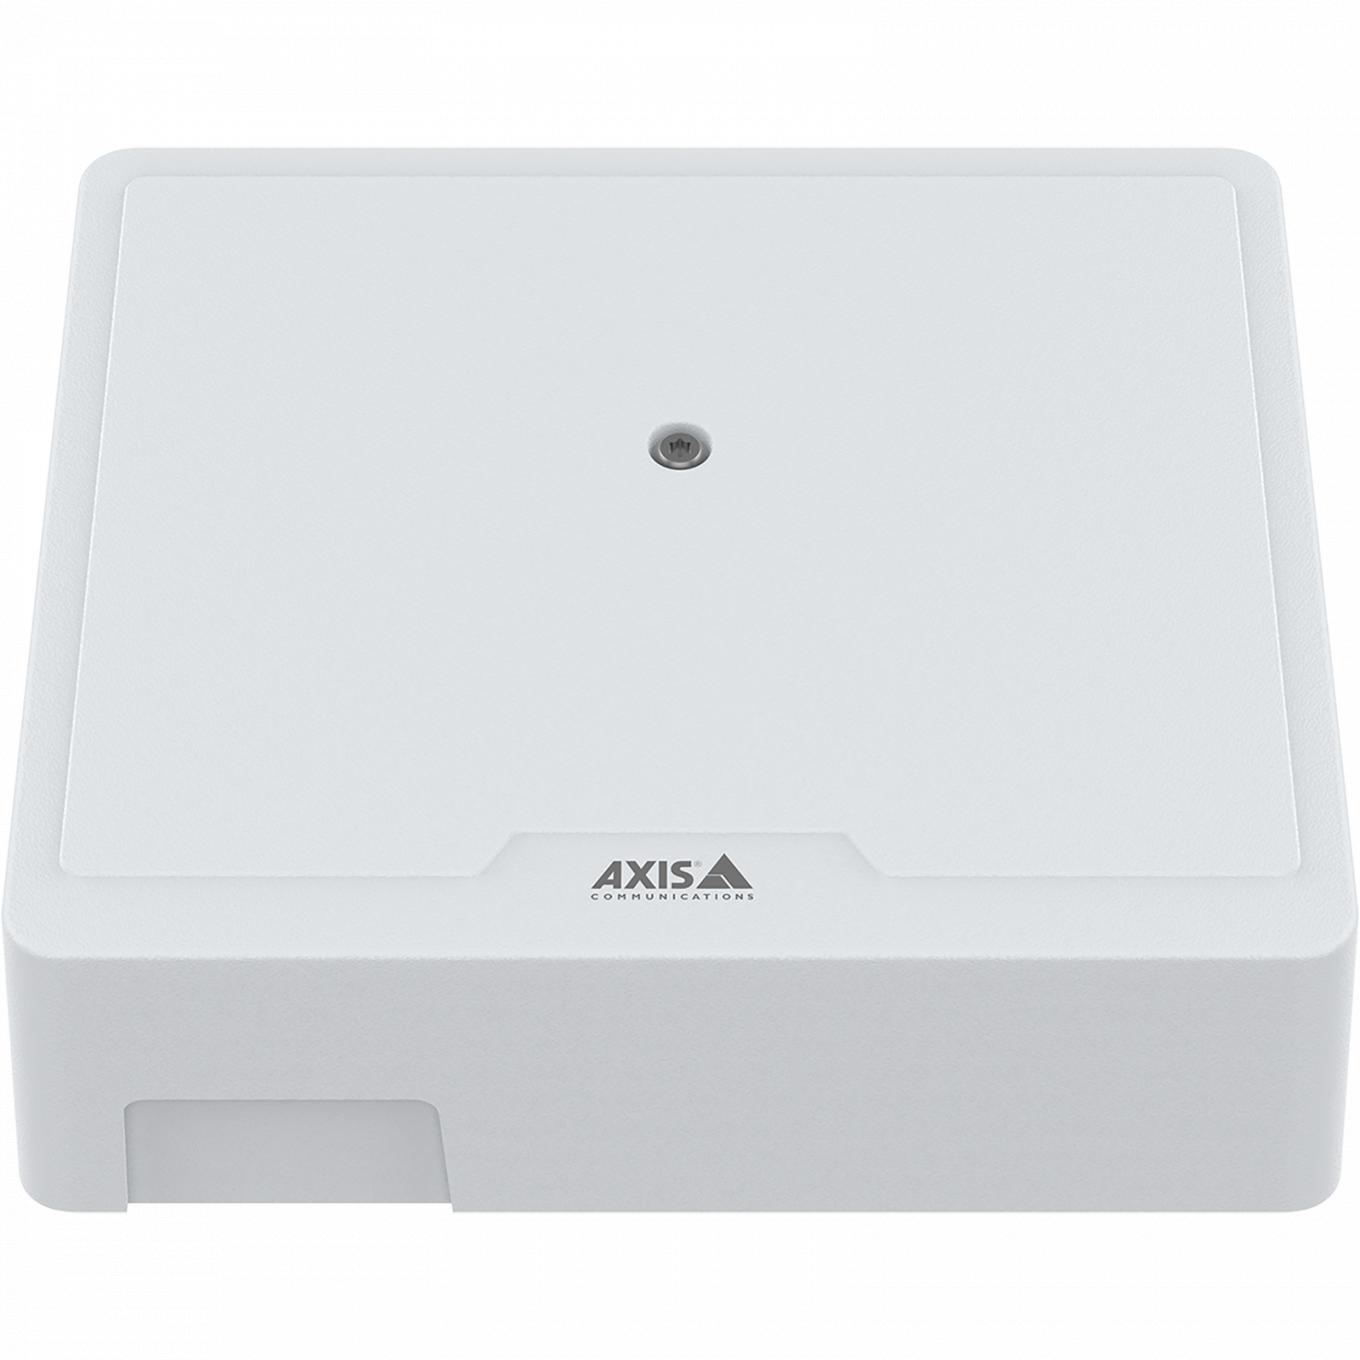 전면에서 본 AXIS A1210 Network Door Controller